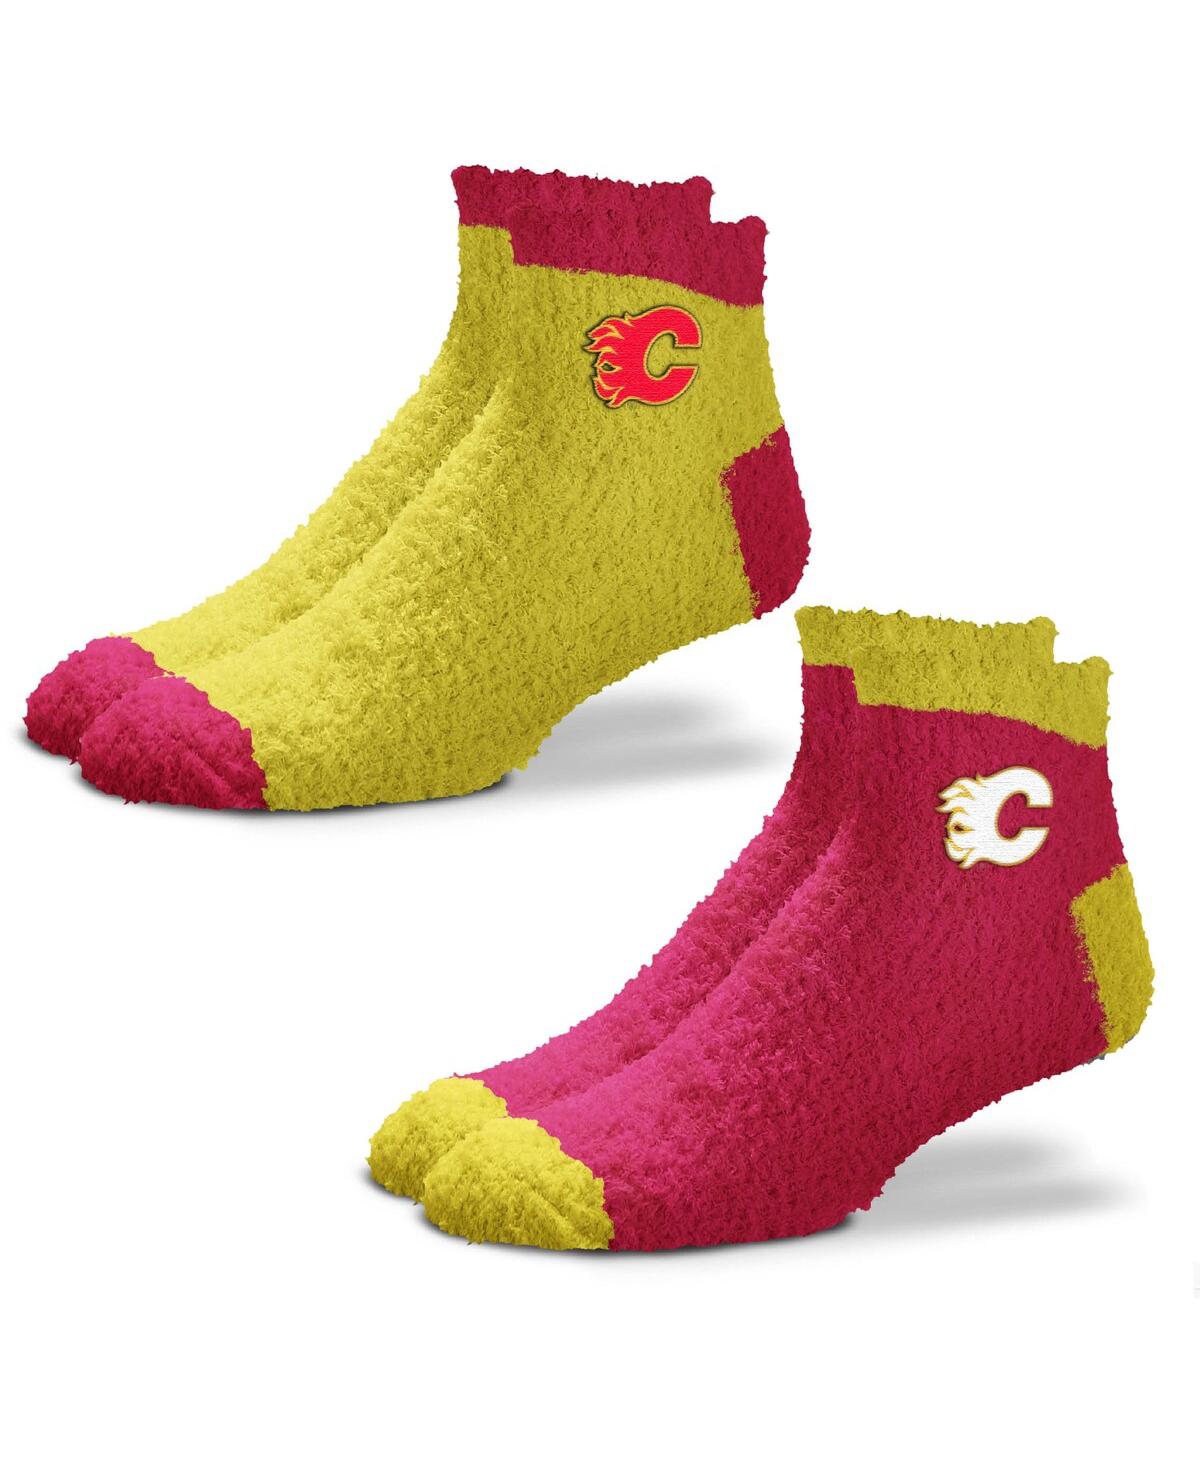 Women's For Bare Feet Calgary Flames 2-Pack Team Sleep Soft Socks - Red